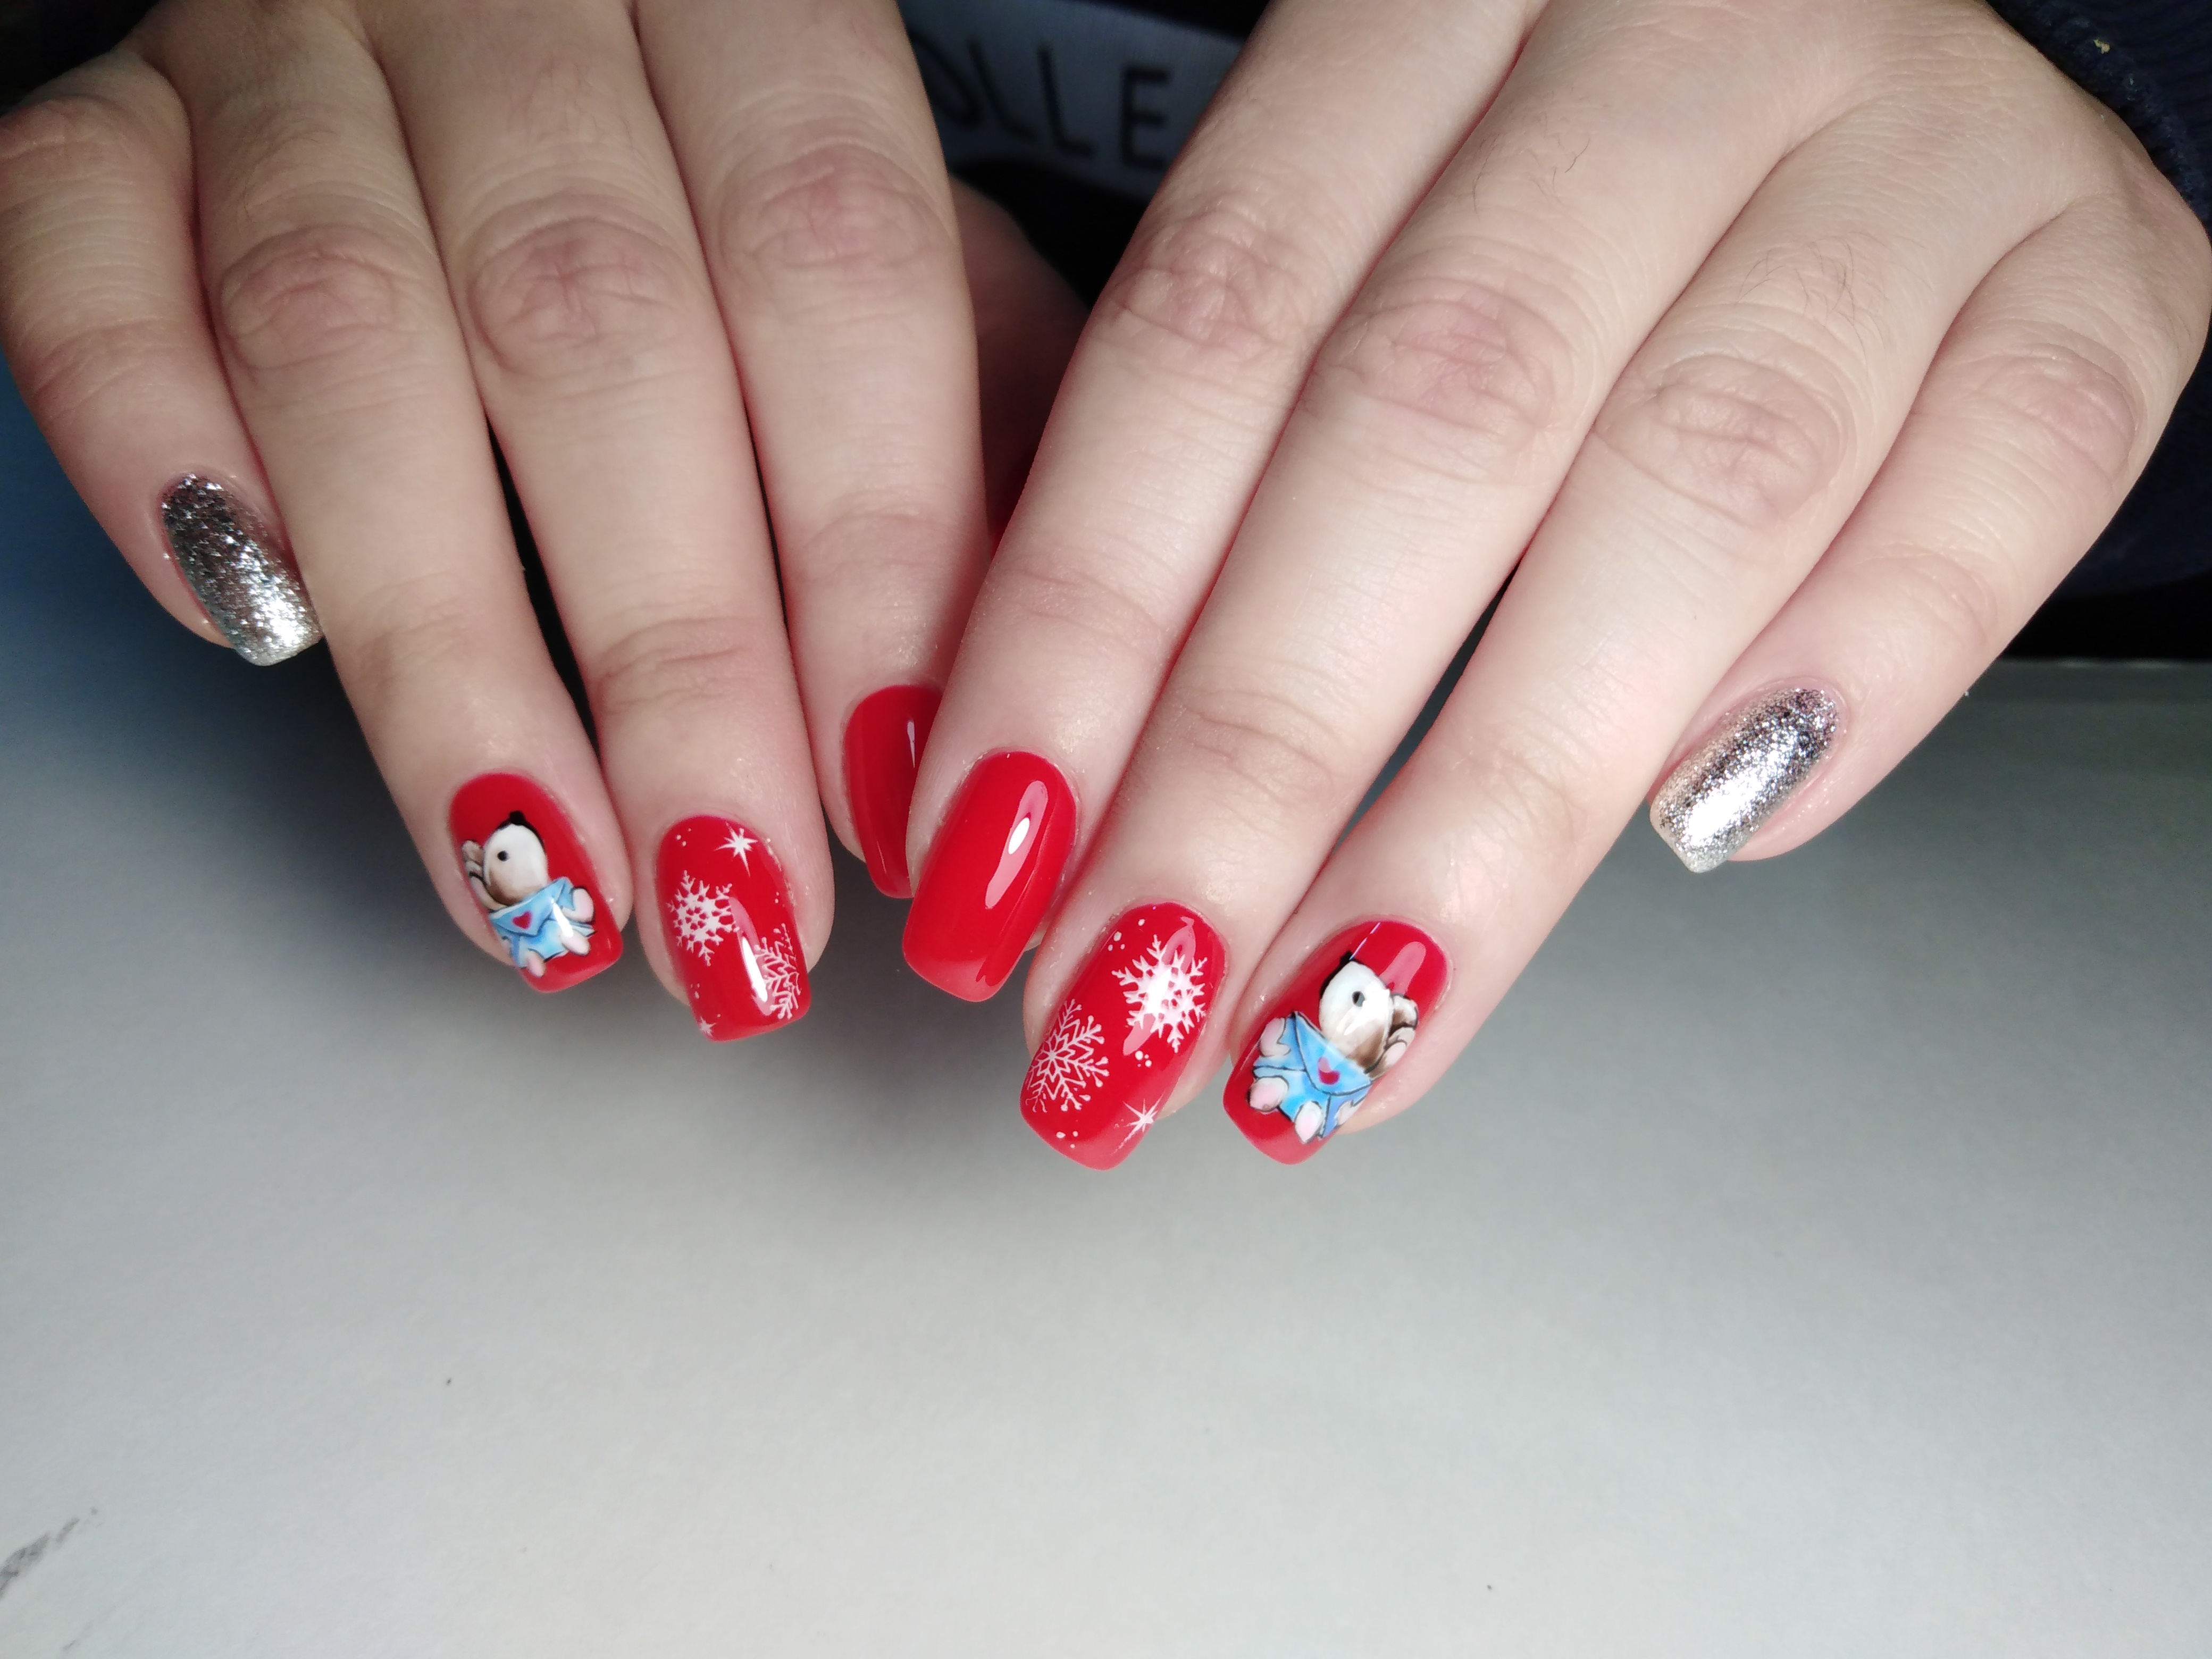 Маникюр в красном цвете с мультяшными слайдерами "мышки" и "снежинки" и серебряными блёстками.